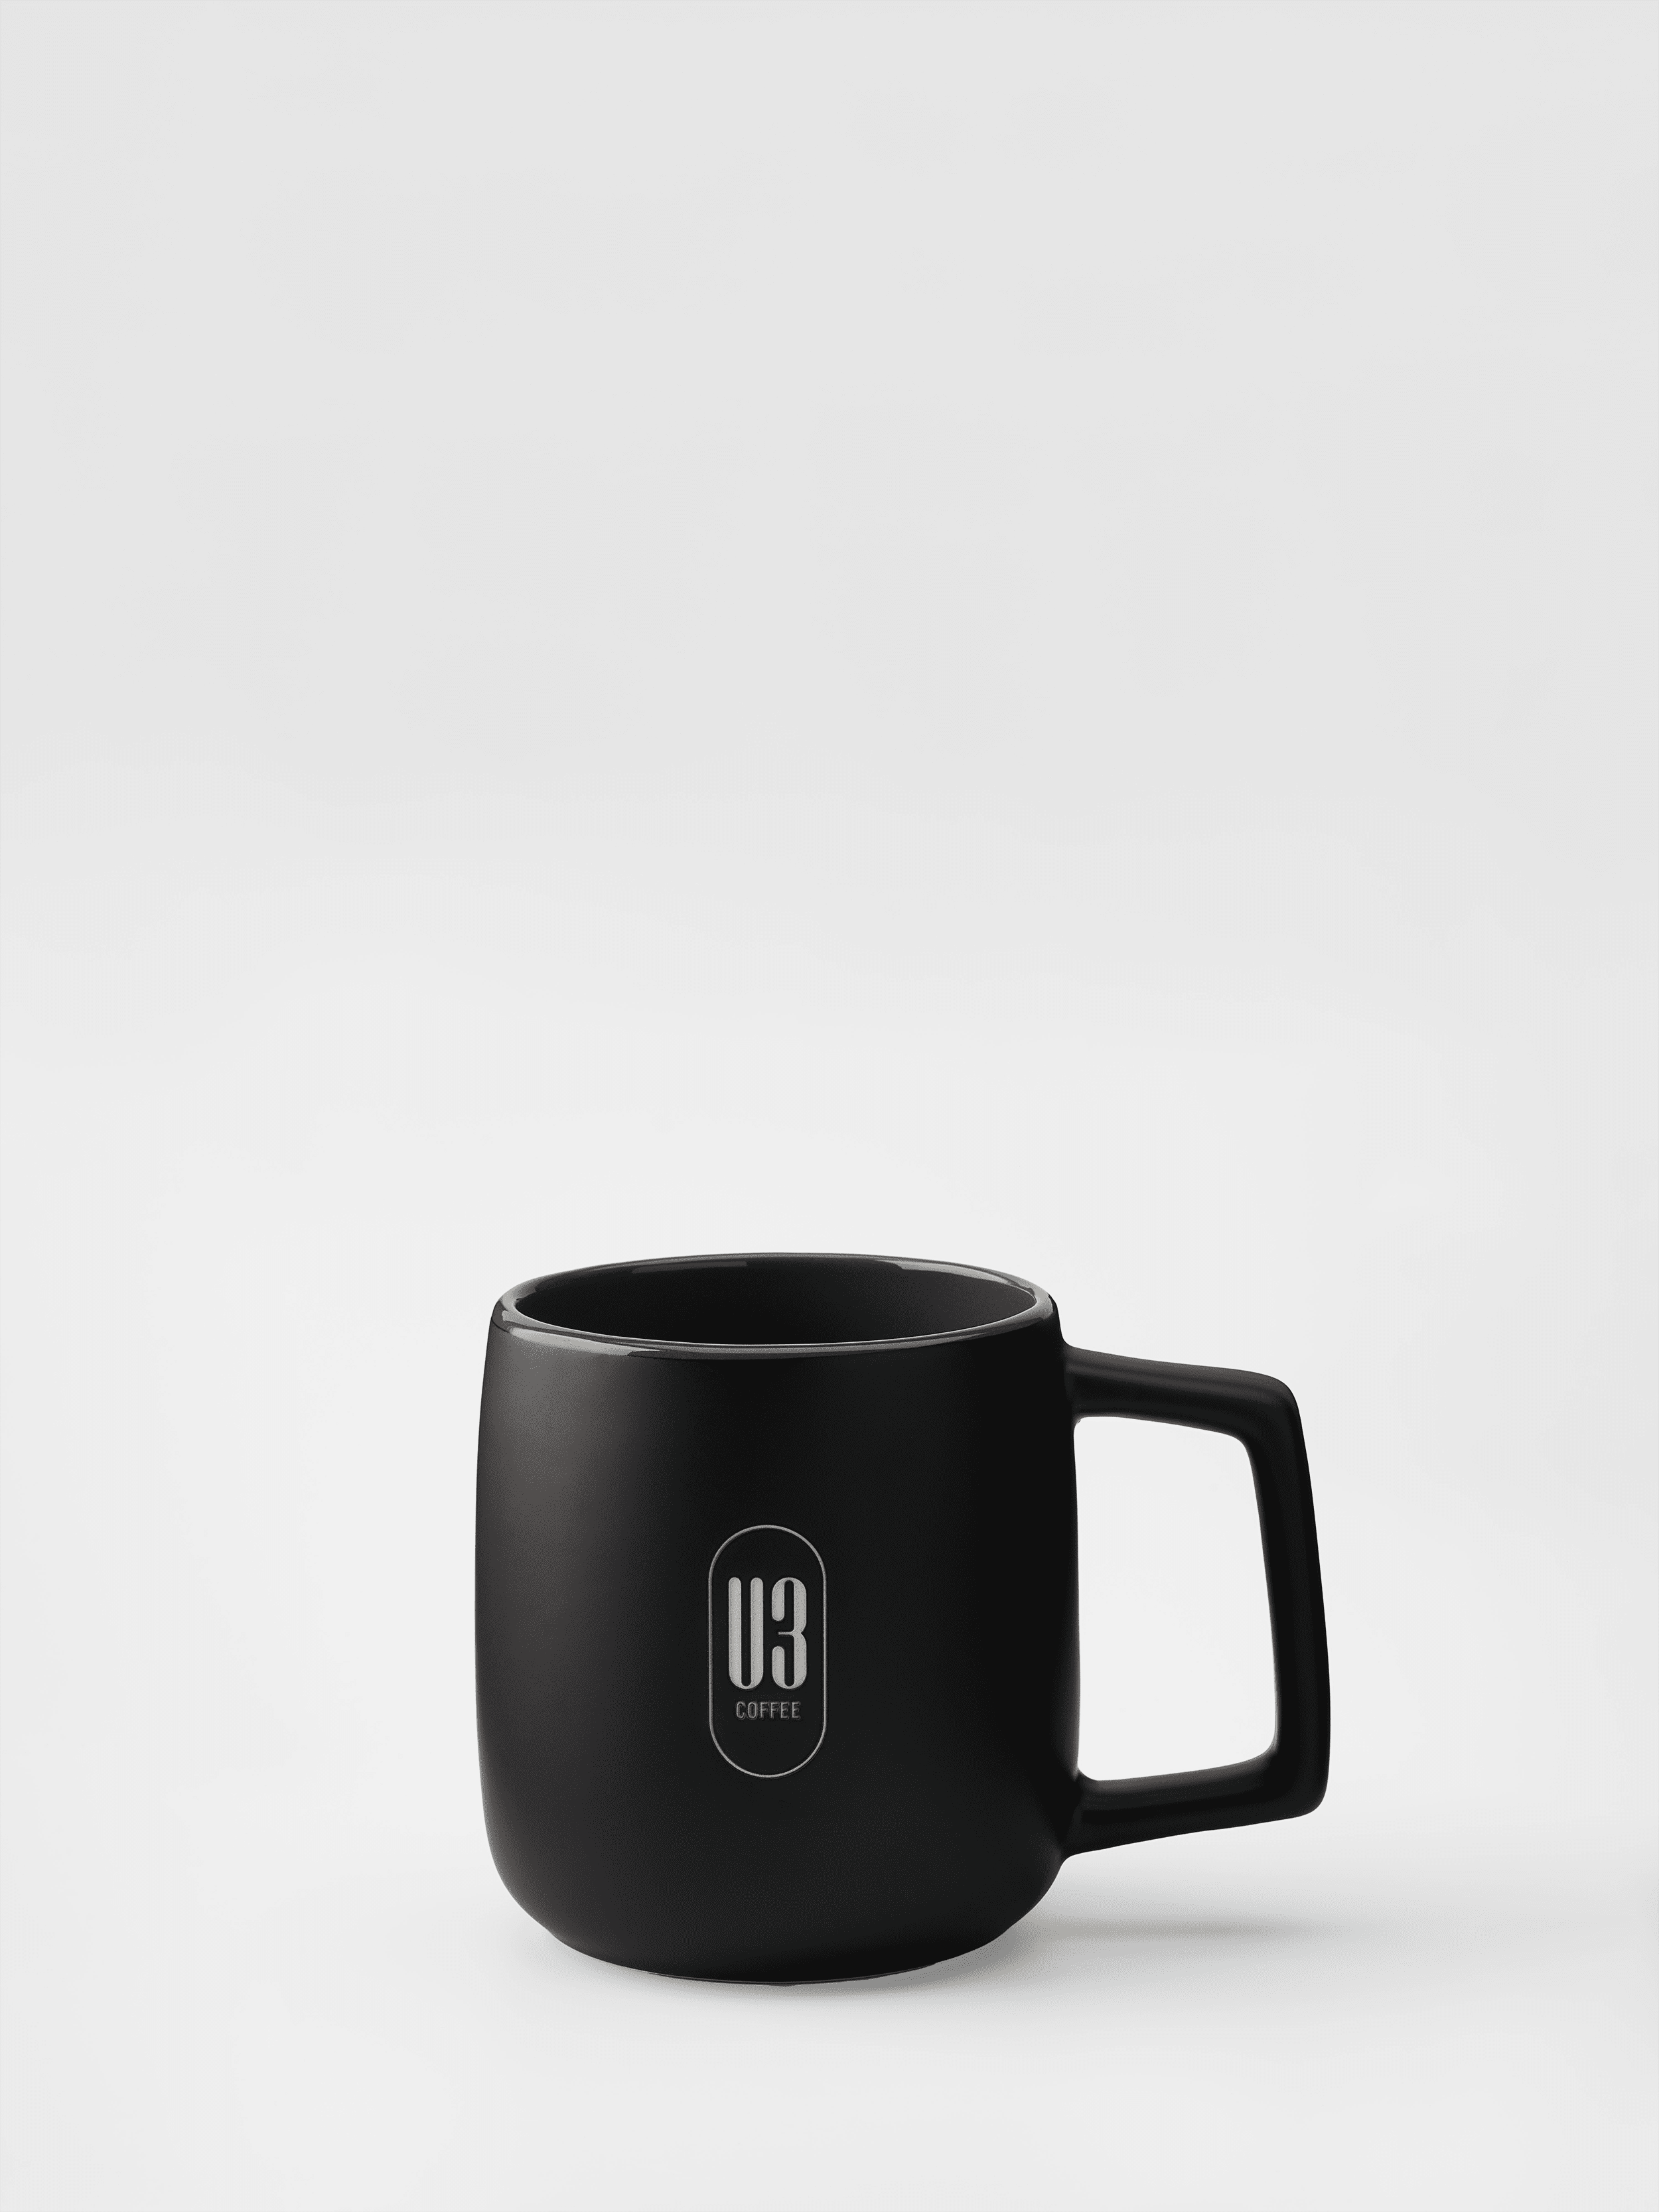 u3 coffee mug